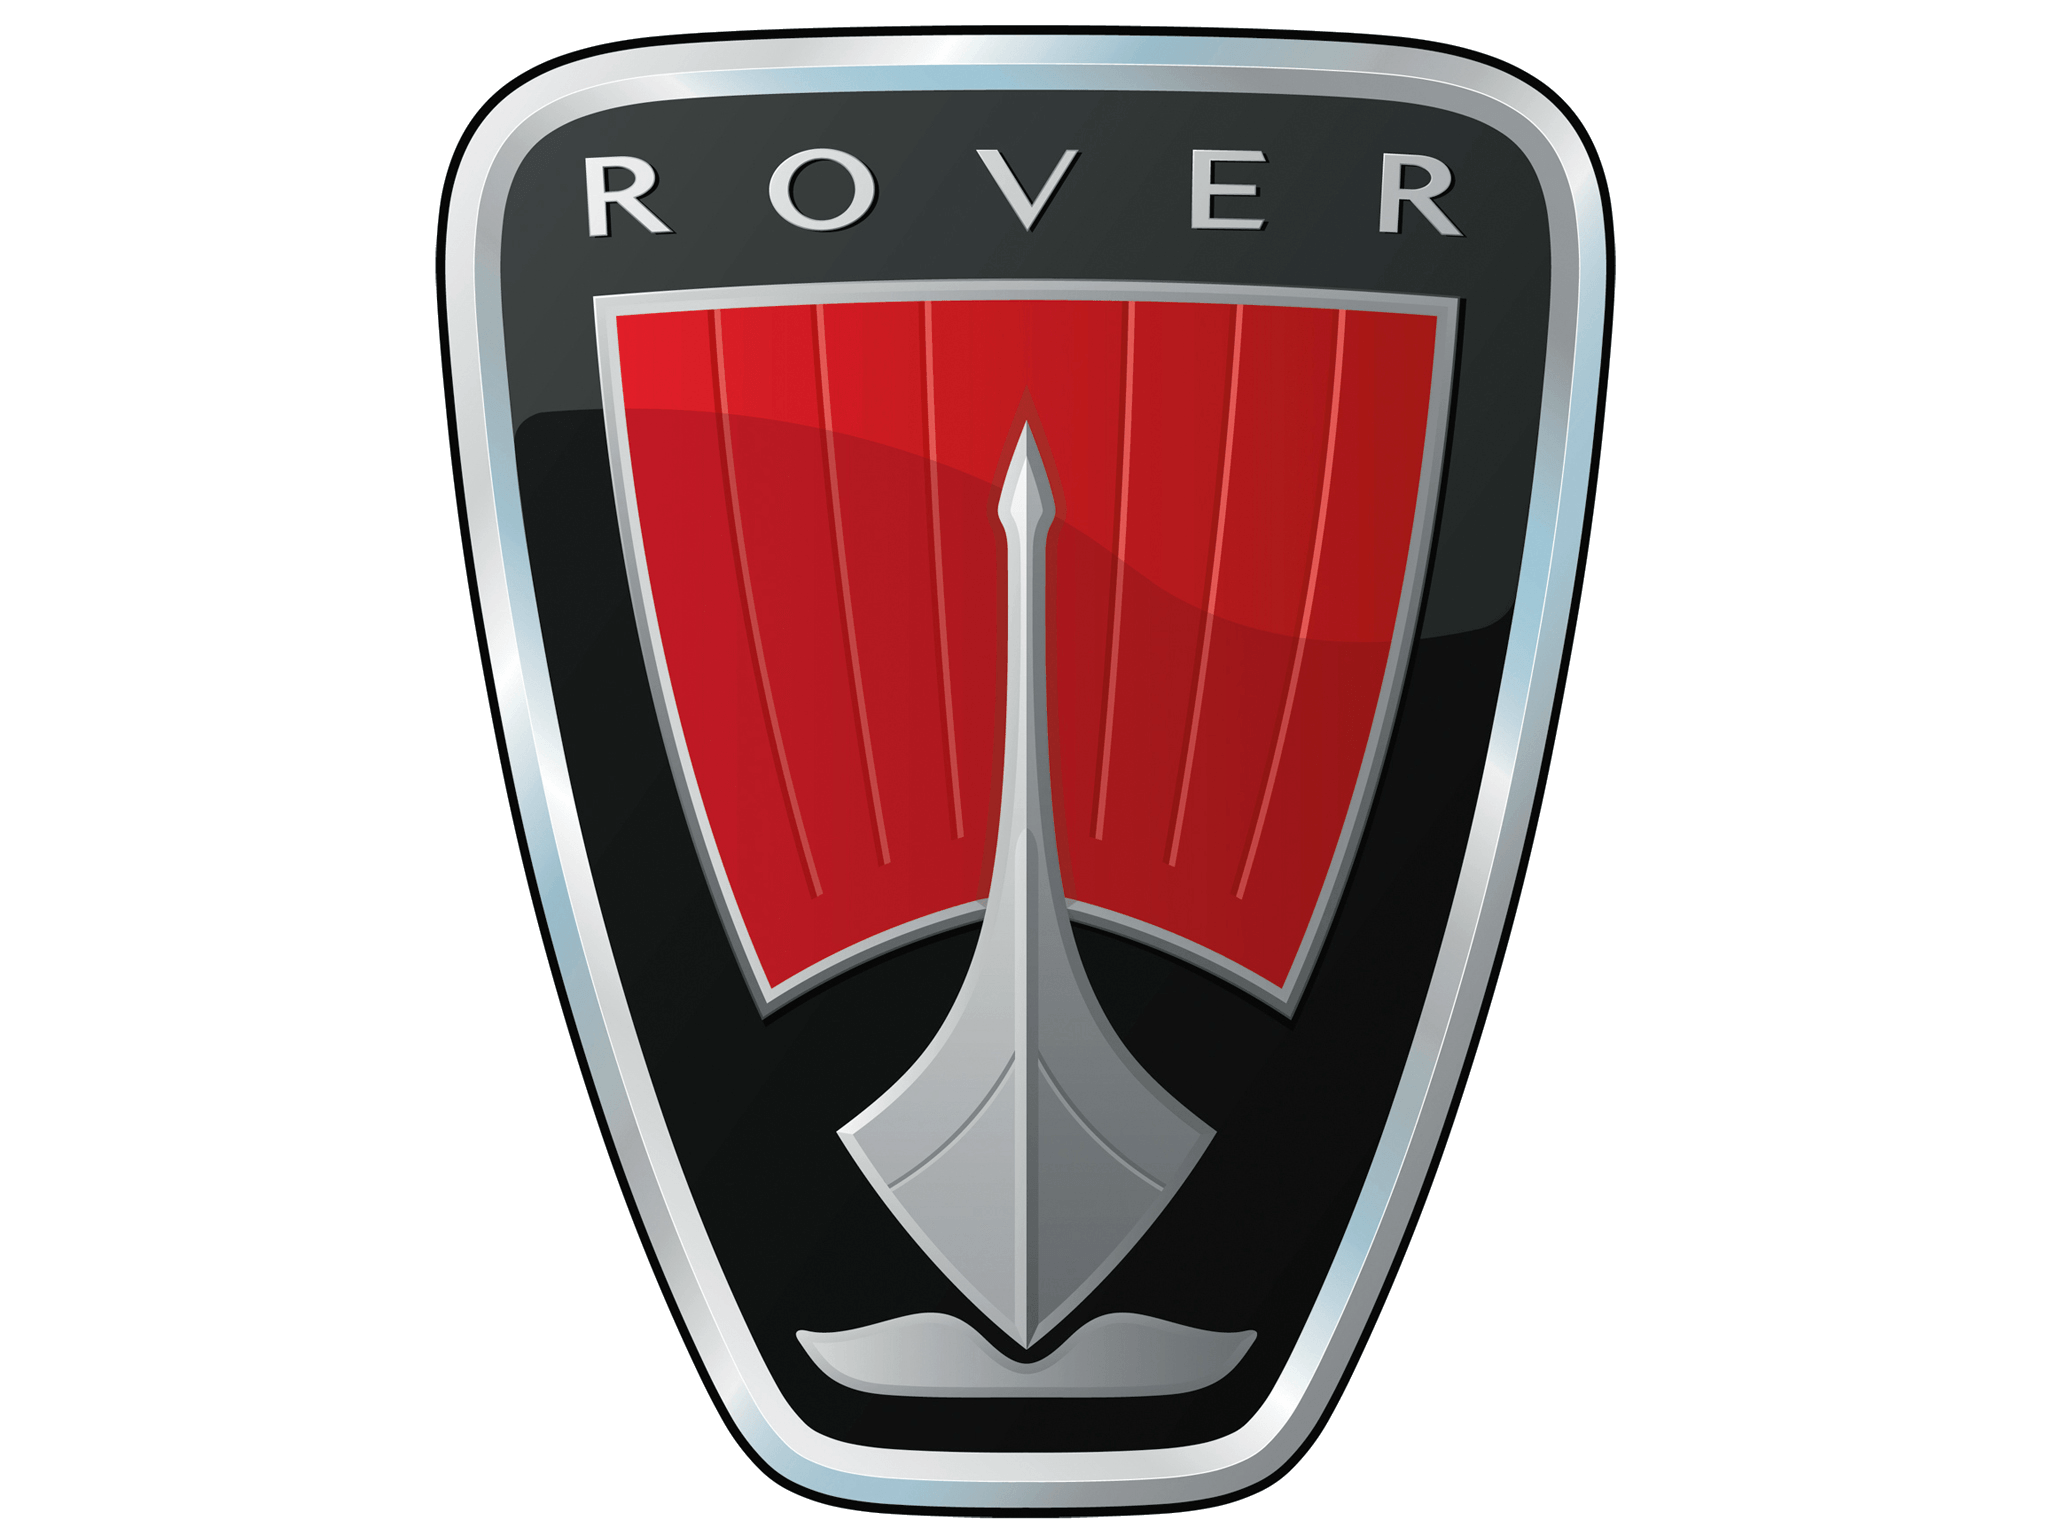 Red Car Company Logo - Rover Logo, Rover Car Symbol Meaning And History | Car Brand Names.com